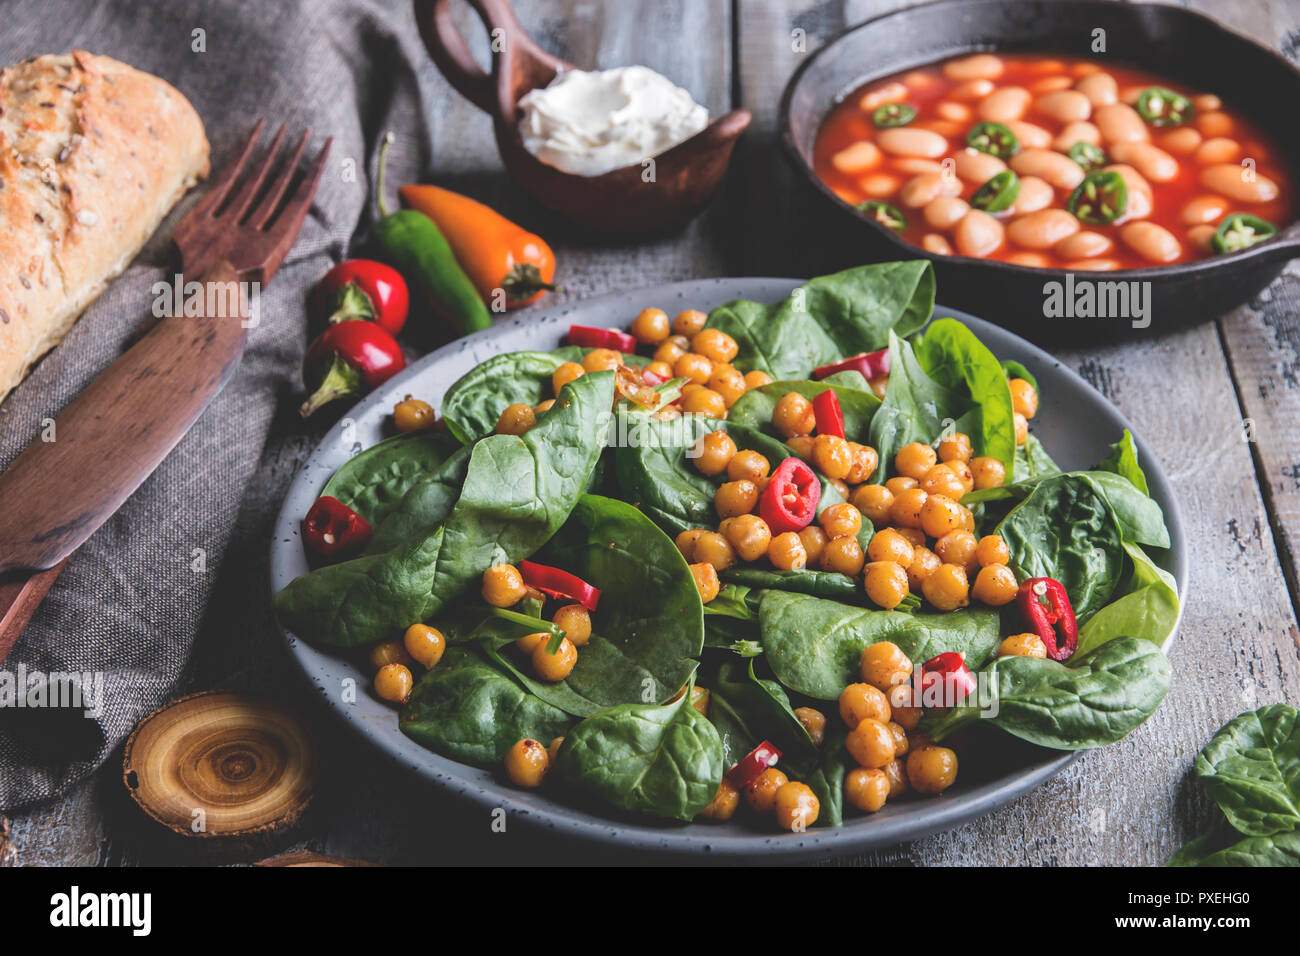 Los garbanzos y verduras con ensalada de hojas de espinaca, la alimentación vegetariana casera saludable, dieta. blanco judías en salsa de tomate Foto de stock